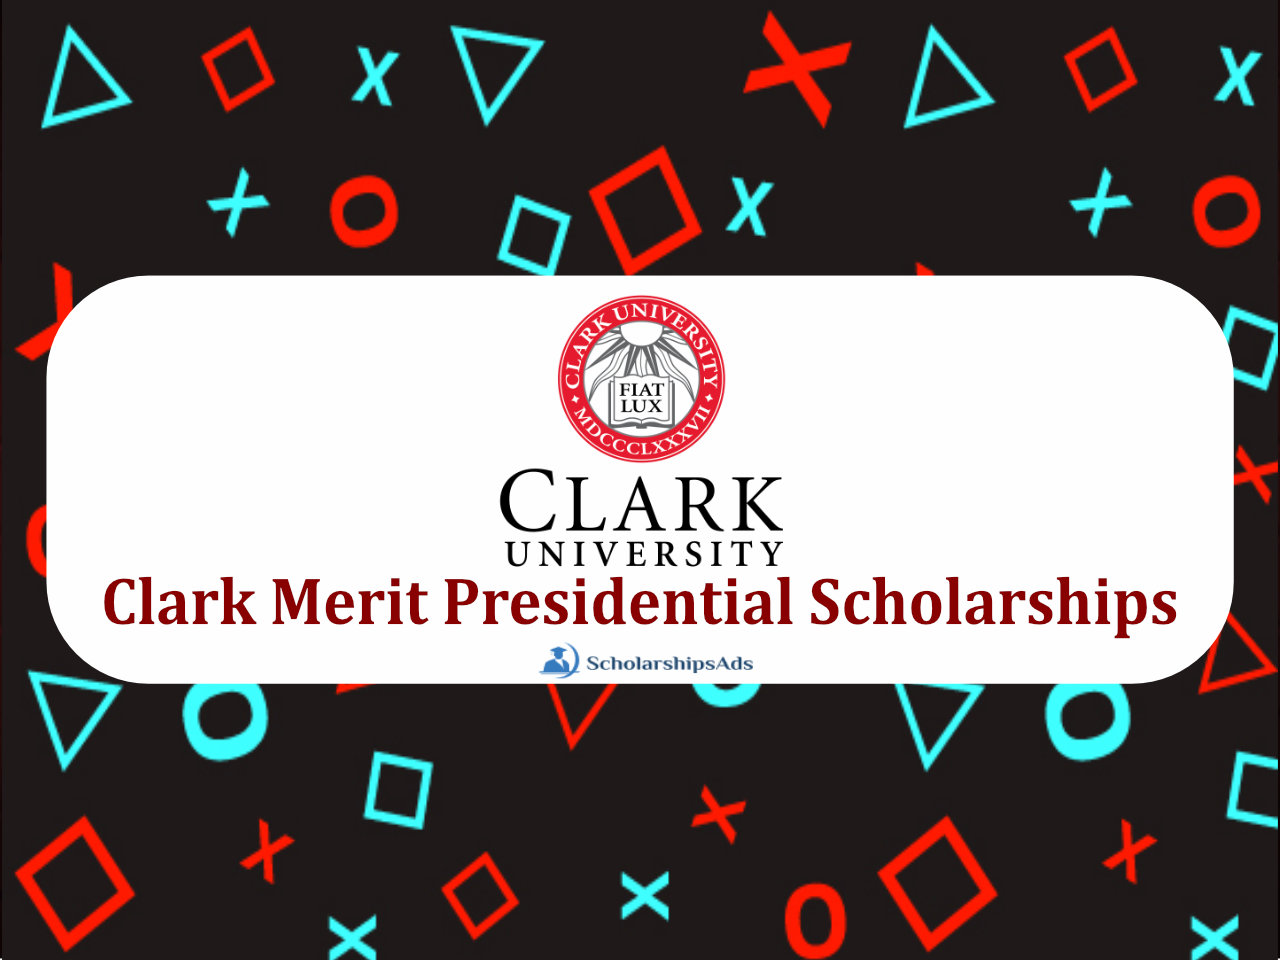 Clark Merit Presidential Scholarships.